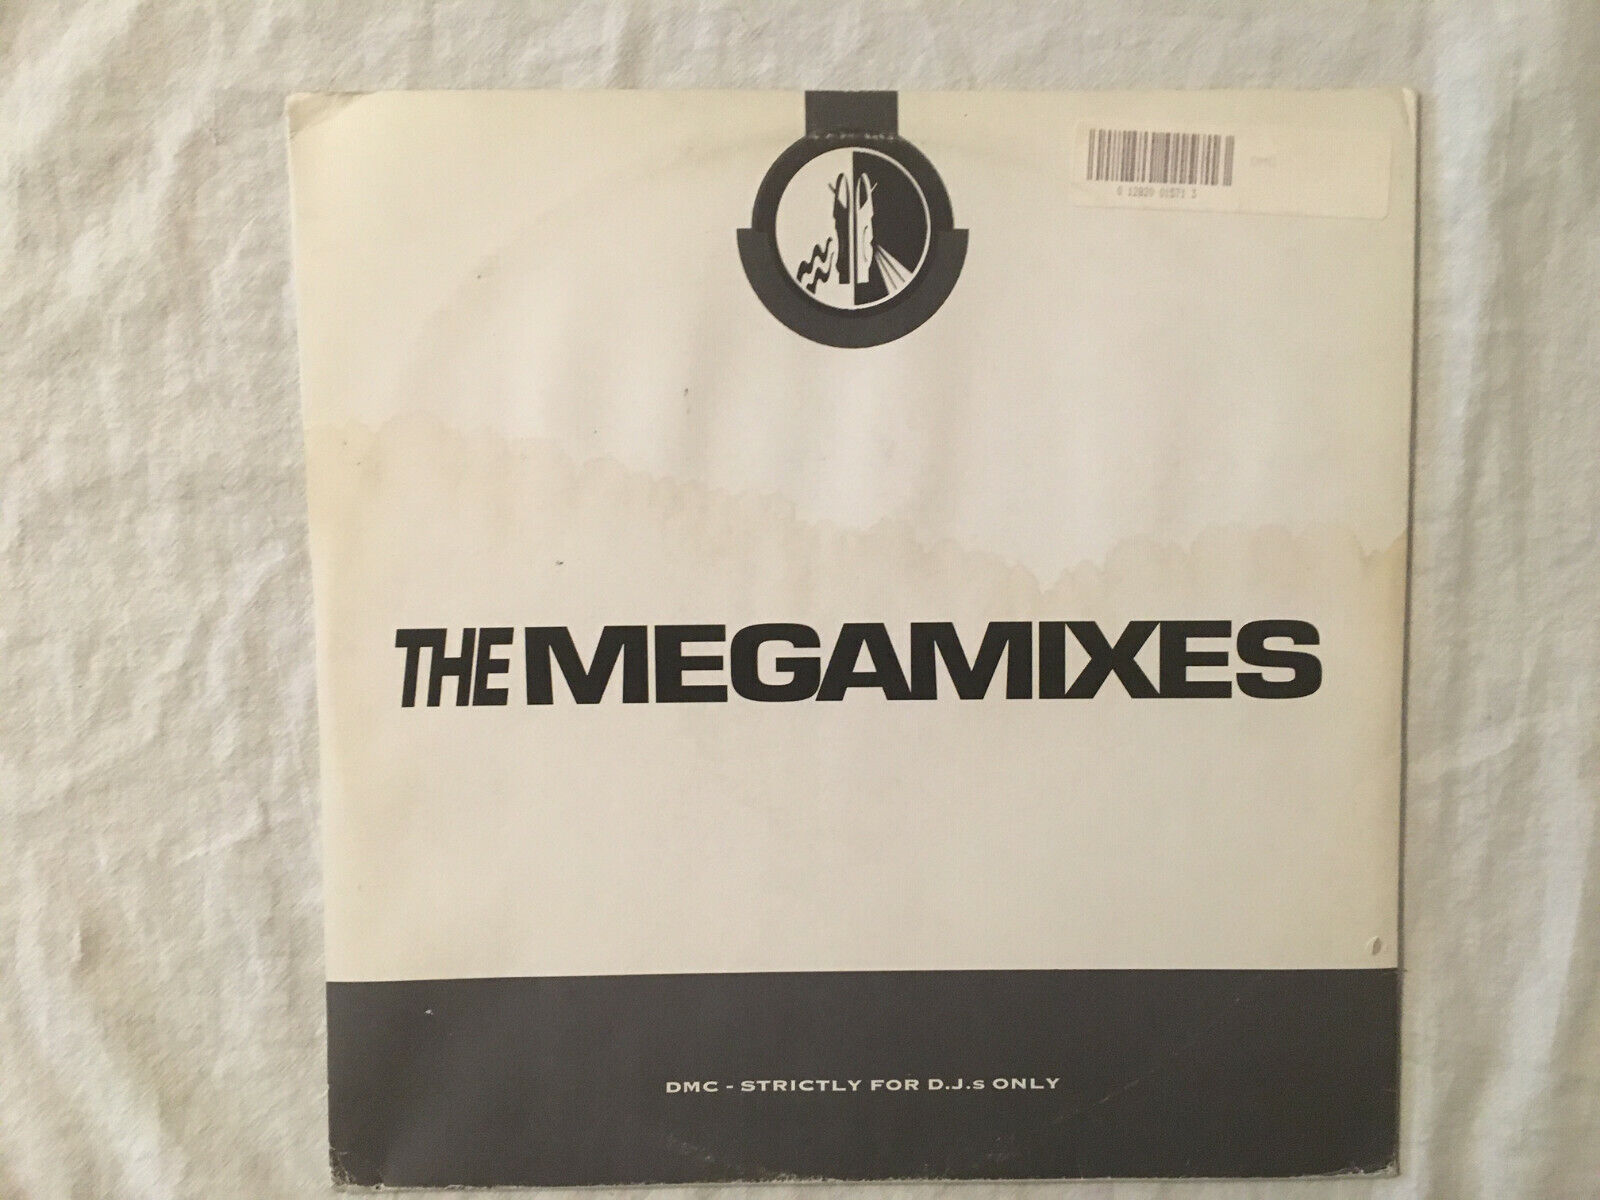 DMC 157 The Mixes Megamixes 3/4 157/3/4 157/3 & 157/4 2 record set Medleys